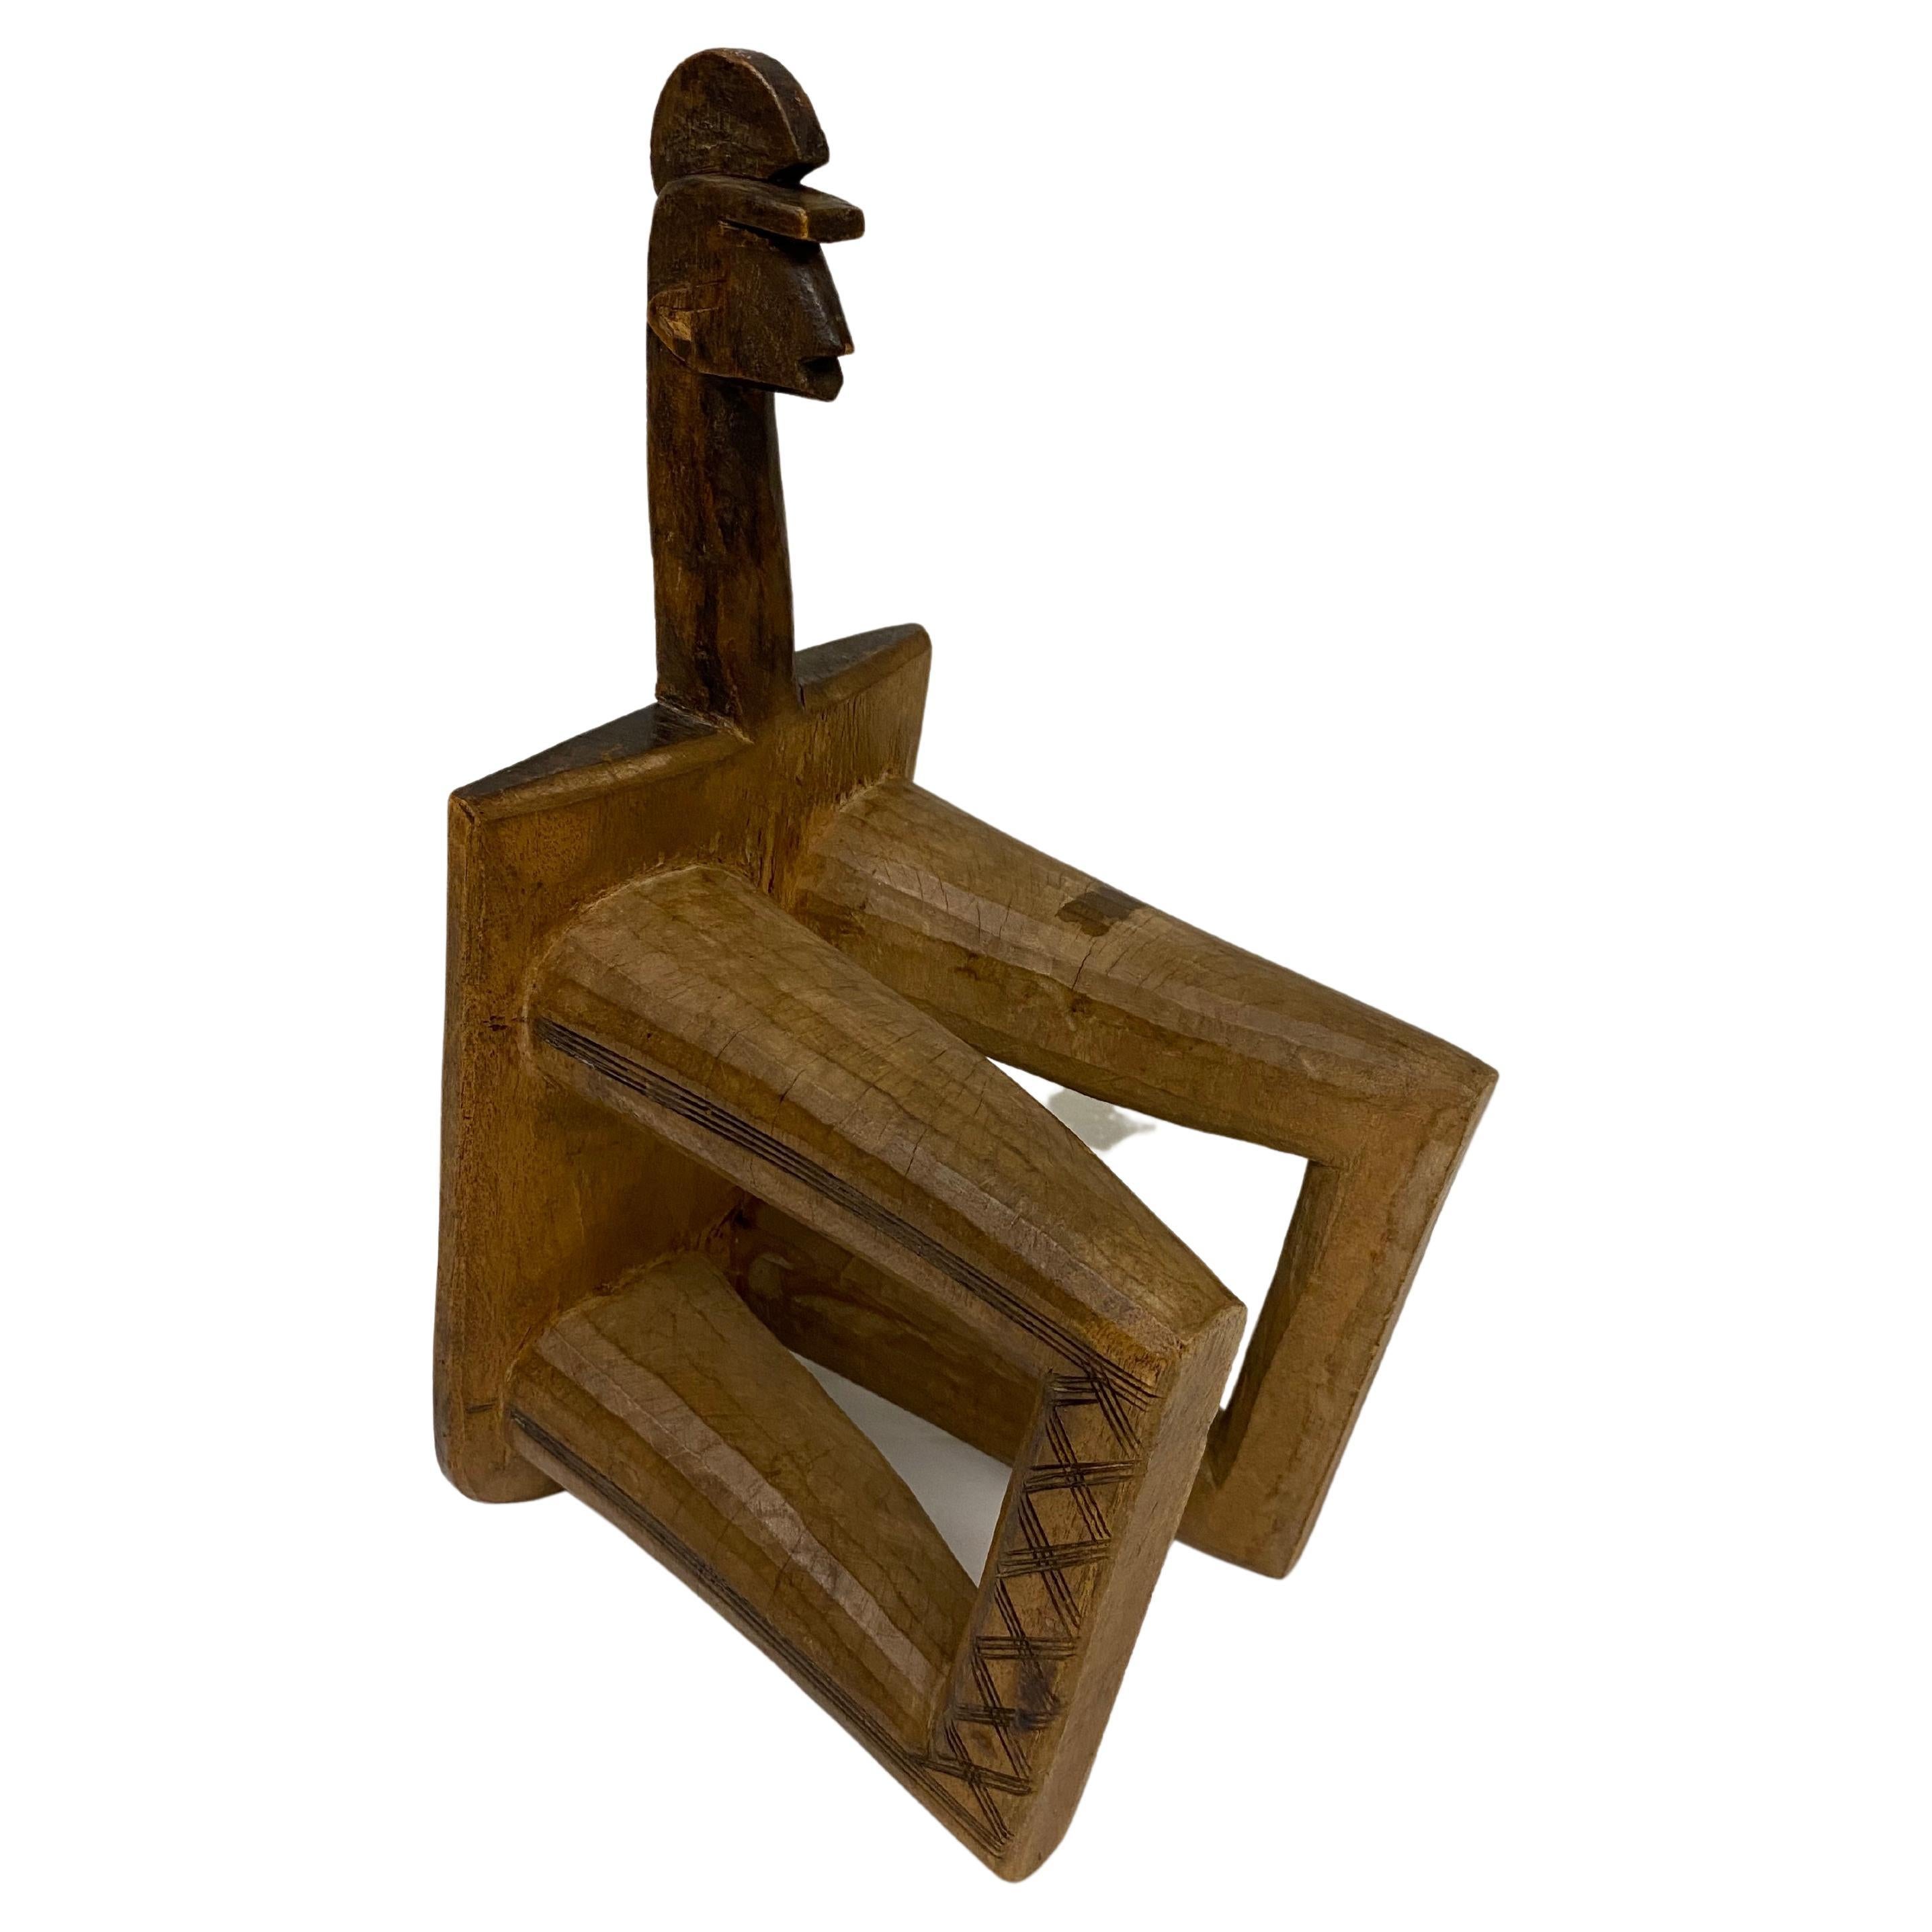 Skulpturaler Holzhocker im Vintage-Stil, hergestellt in Afrika. 
Organische moderne Form aus der Mitte des 20. Jahrhunderts. 

Ein charmantes Deko-Objekt für die moderne Einrichtung mit einer feinen Patina. Perfekt geeignet als Kinderschemel,